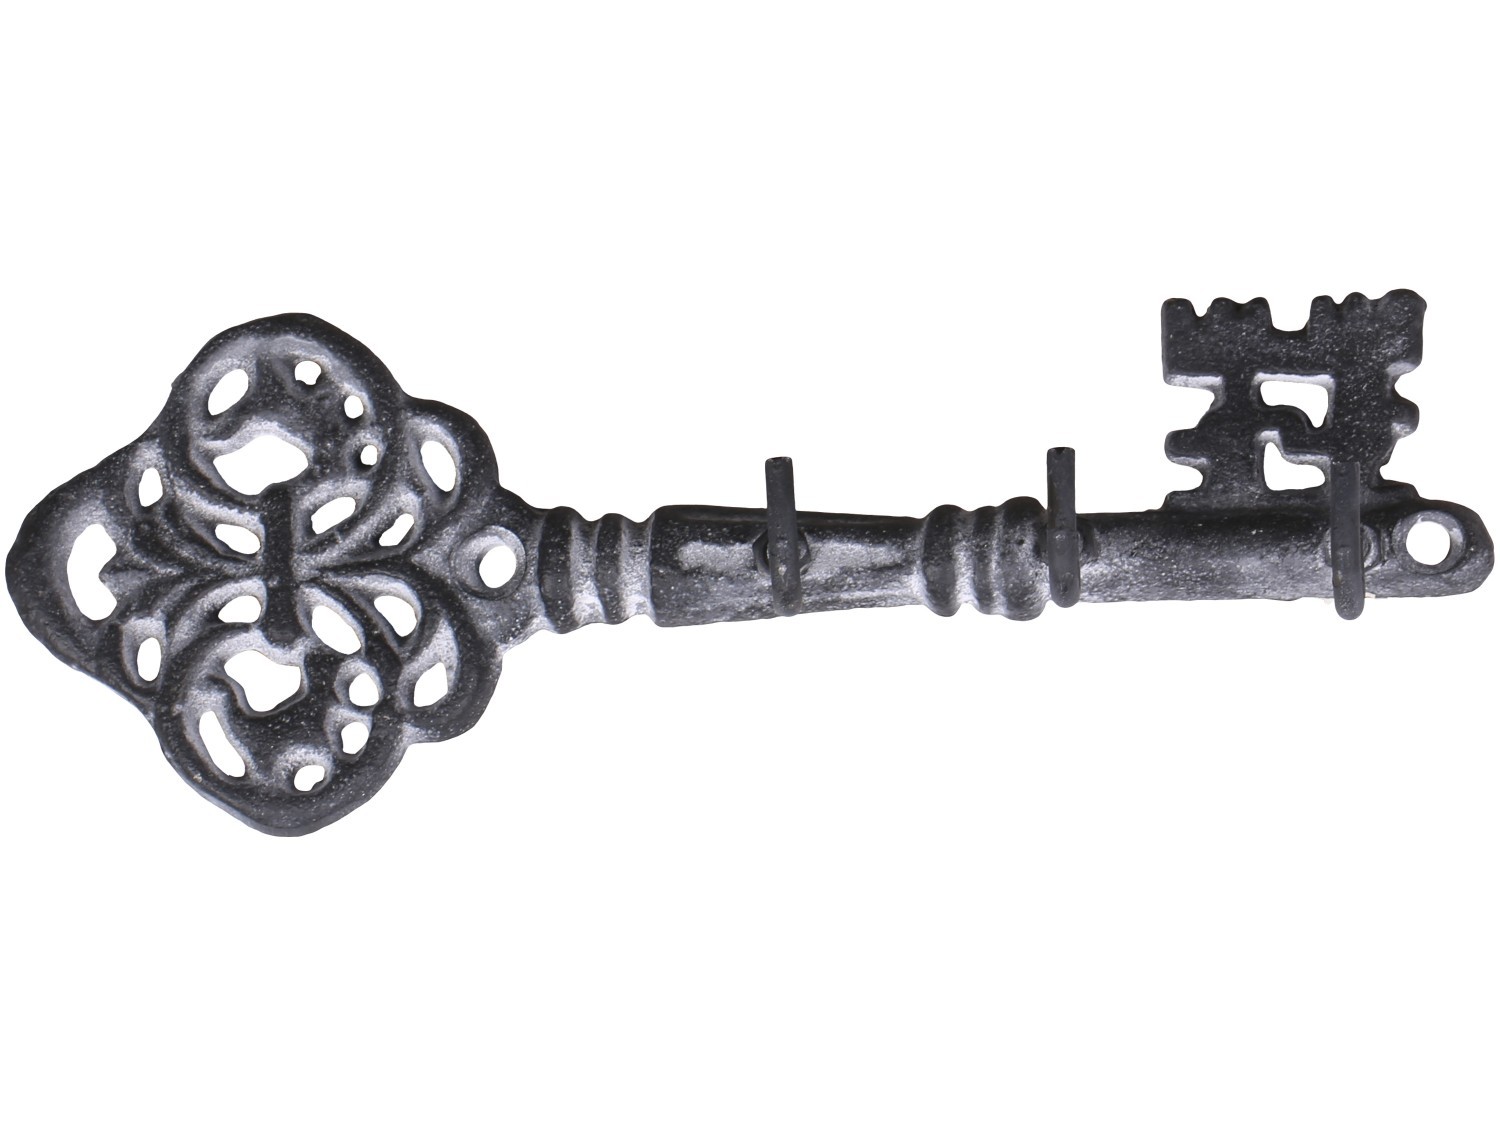 Šedý antik nástěnný věšák ve tvaru klíče se 3-mi háčky - 19*4*6,5 cm 64057525 (64575-25)